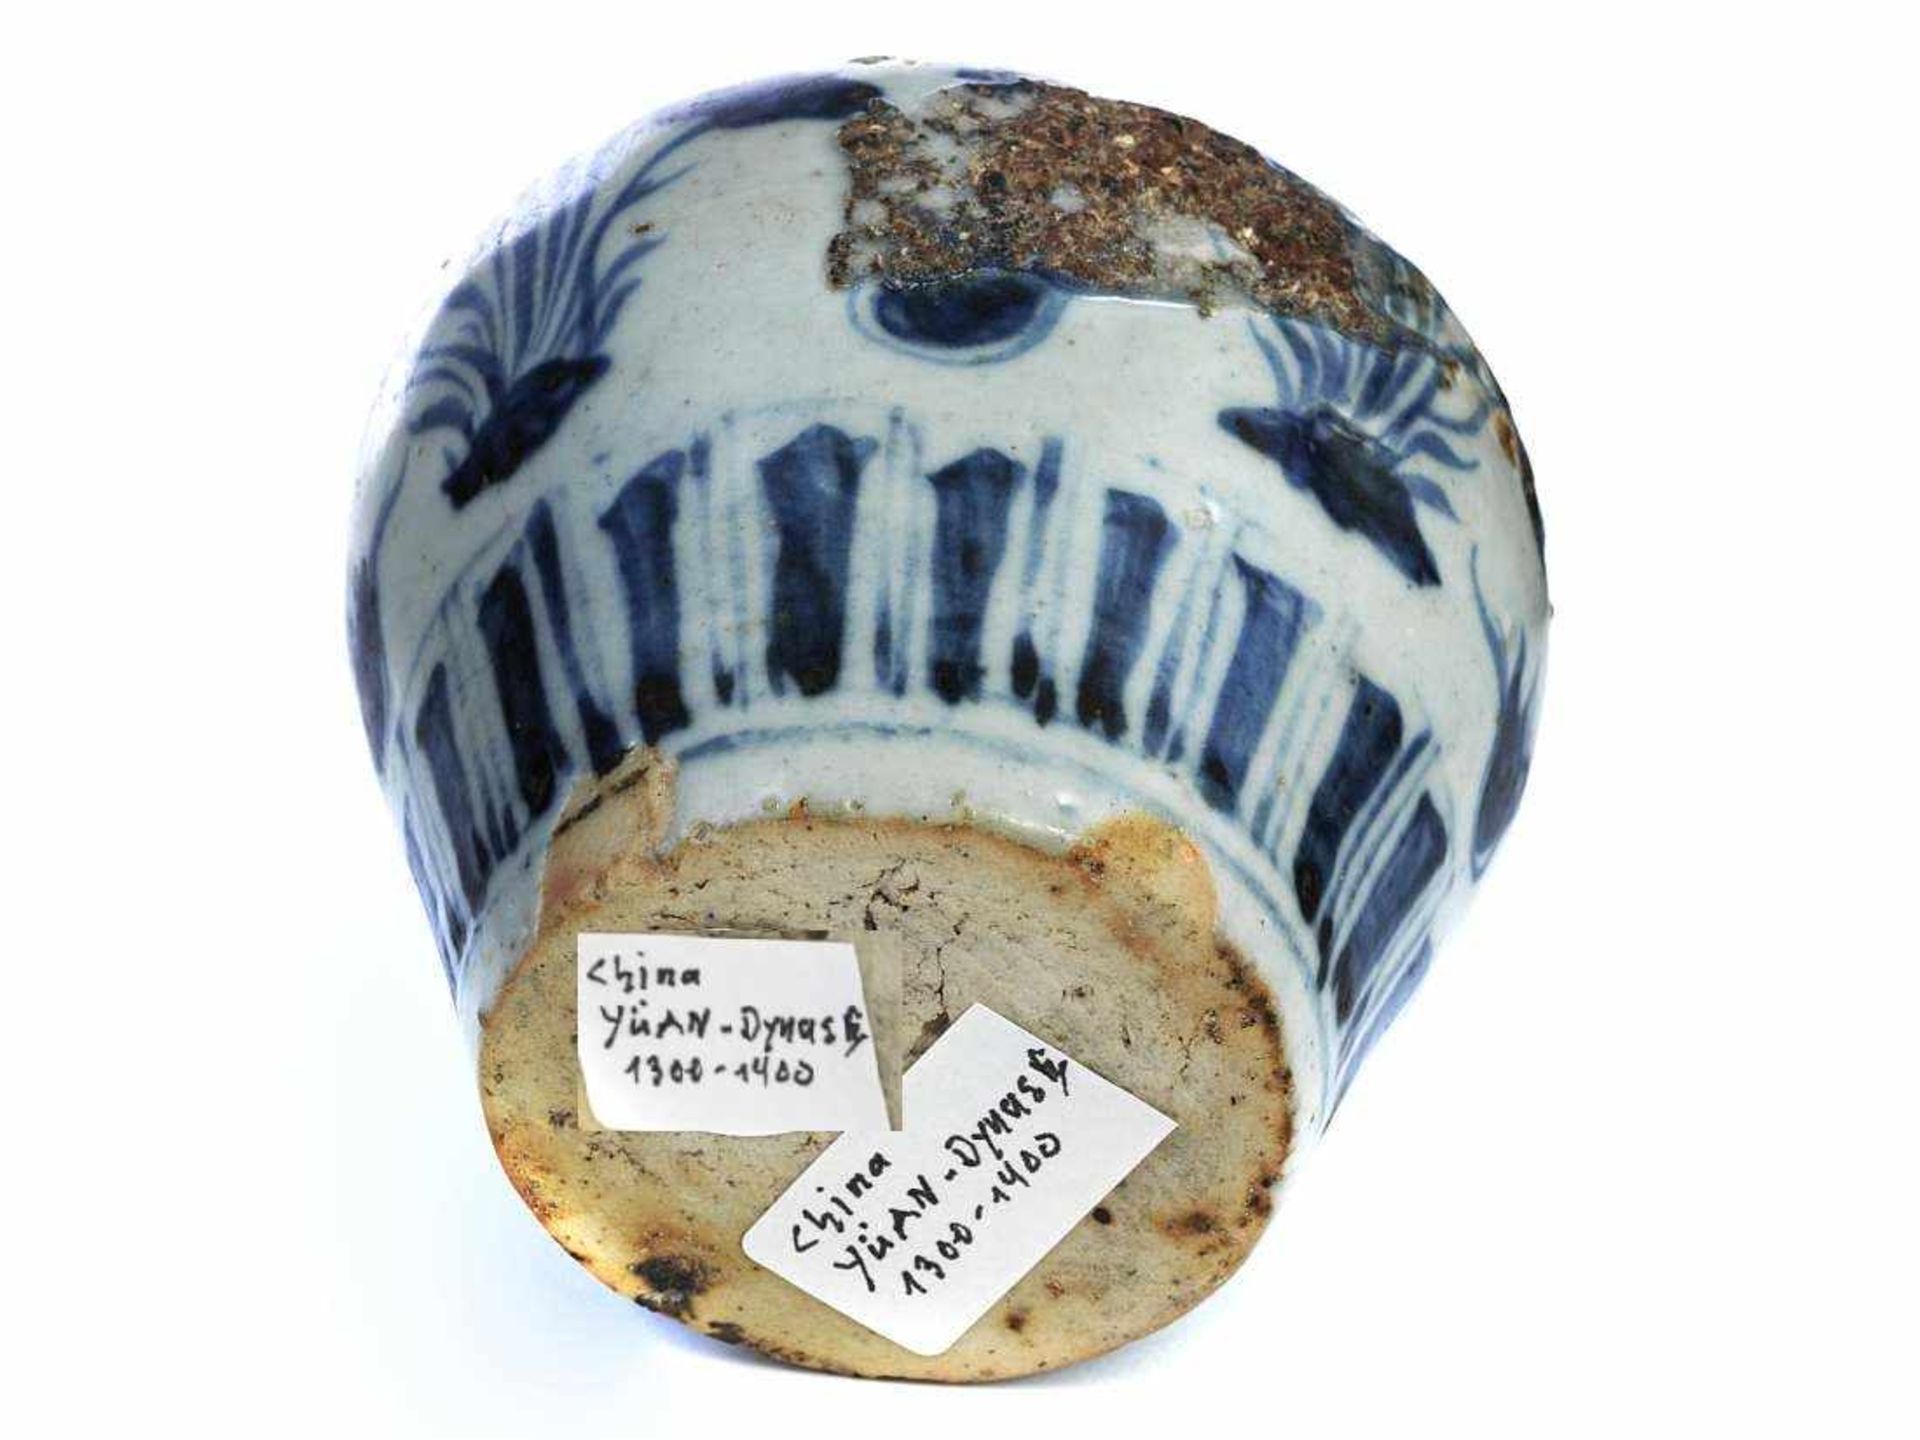 Antike museale Vase. China. Antike museale Vase. China. Laut Einlieferer Yüang Dynastie 1300 - 1400. - Bild 4 aus 4